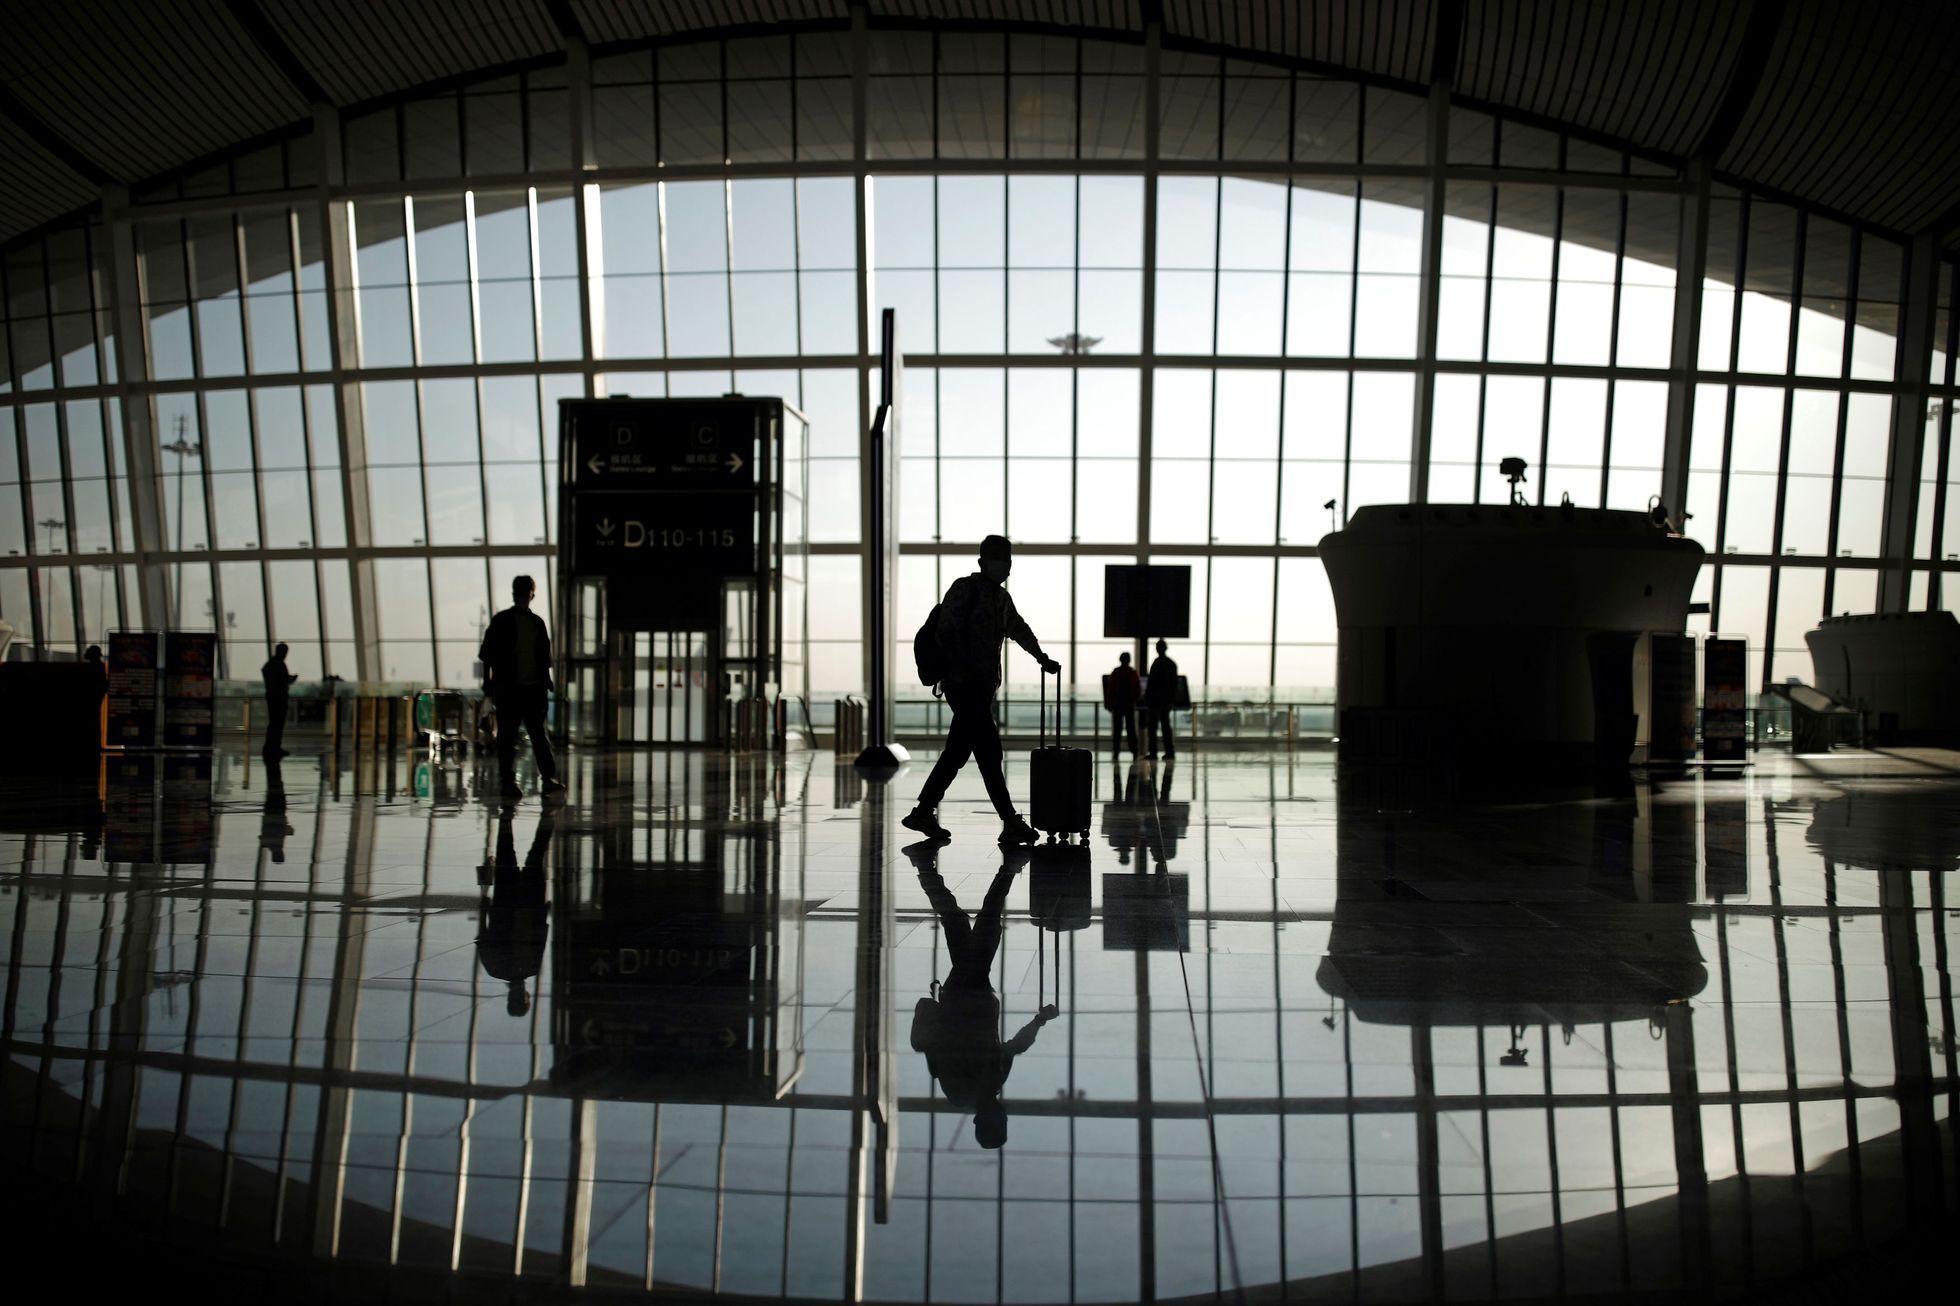 Čínské mezinárodní letiště Ta-sing v době koronaviru